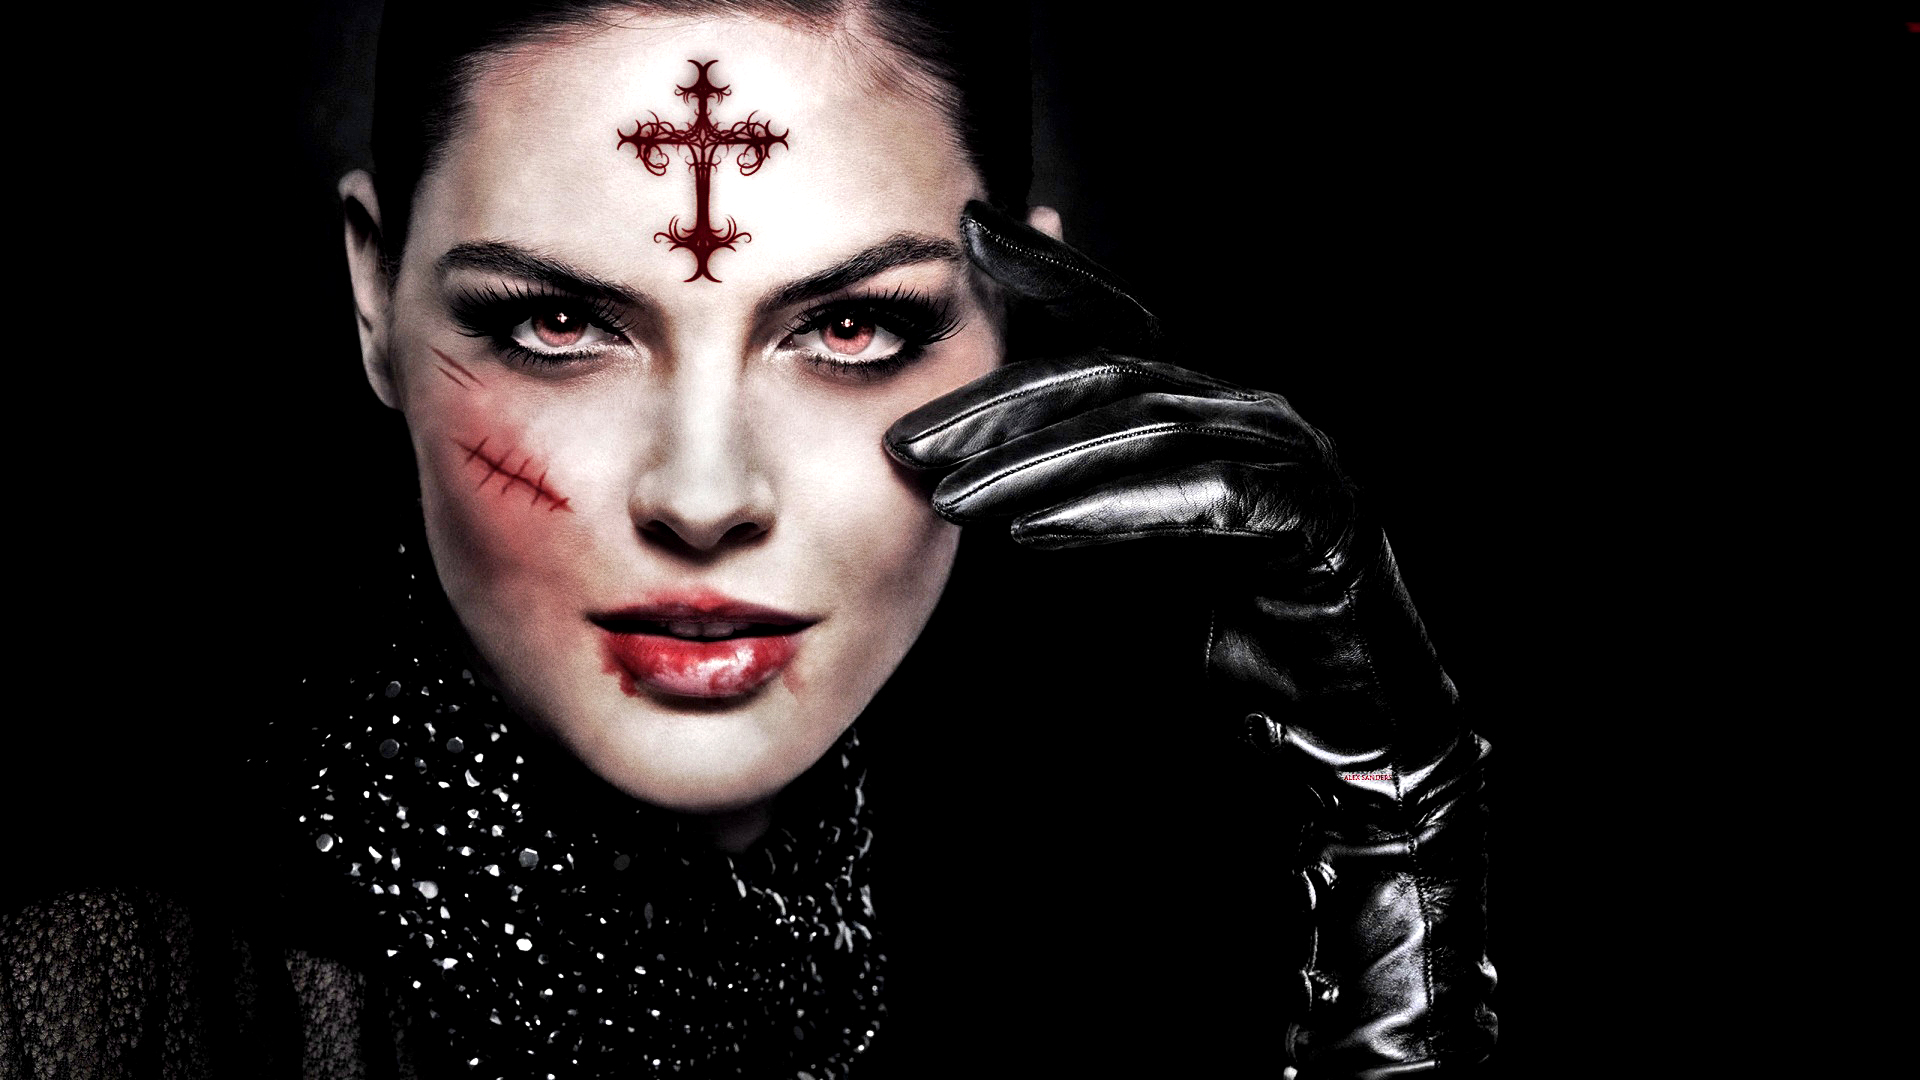 Blood Dark Face Fantasy Gothic Scar Woman 1920x1080